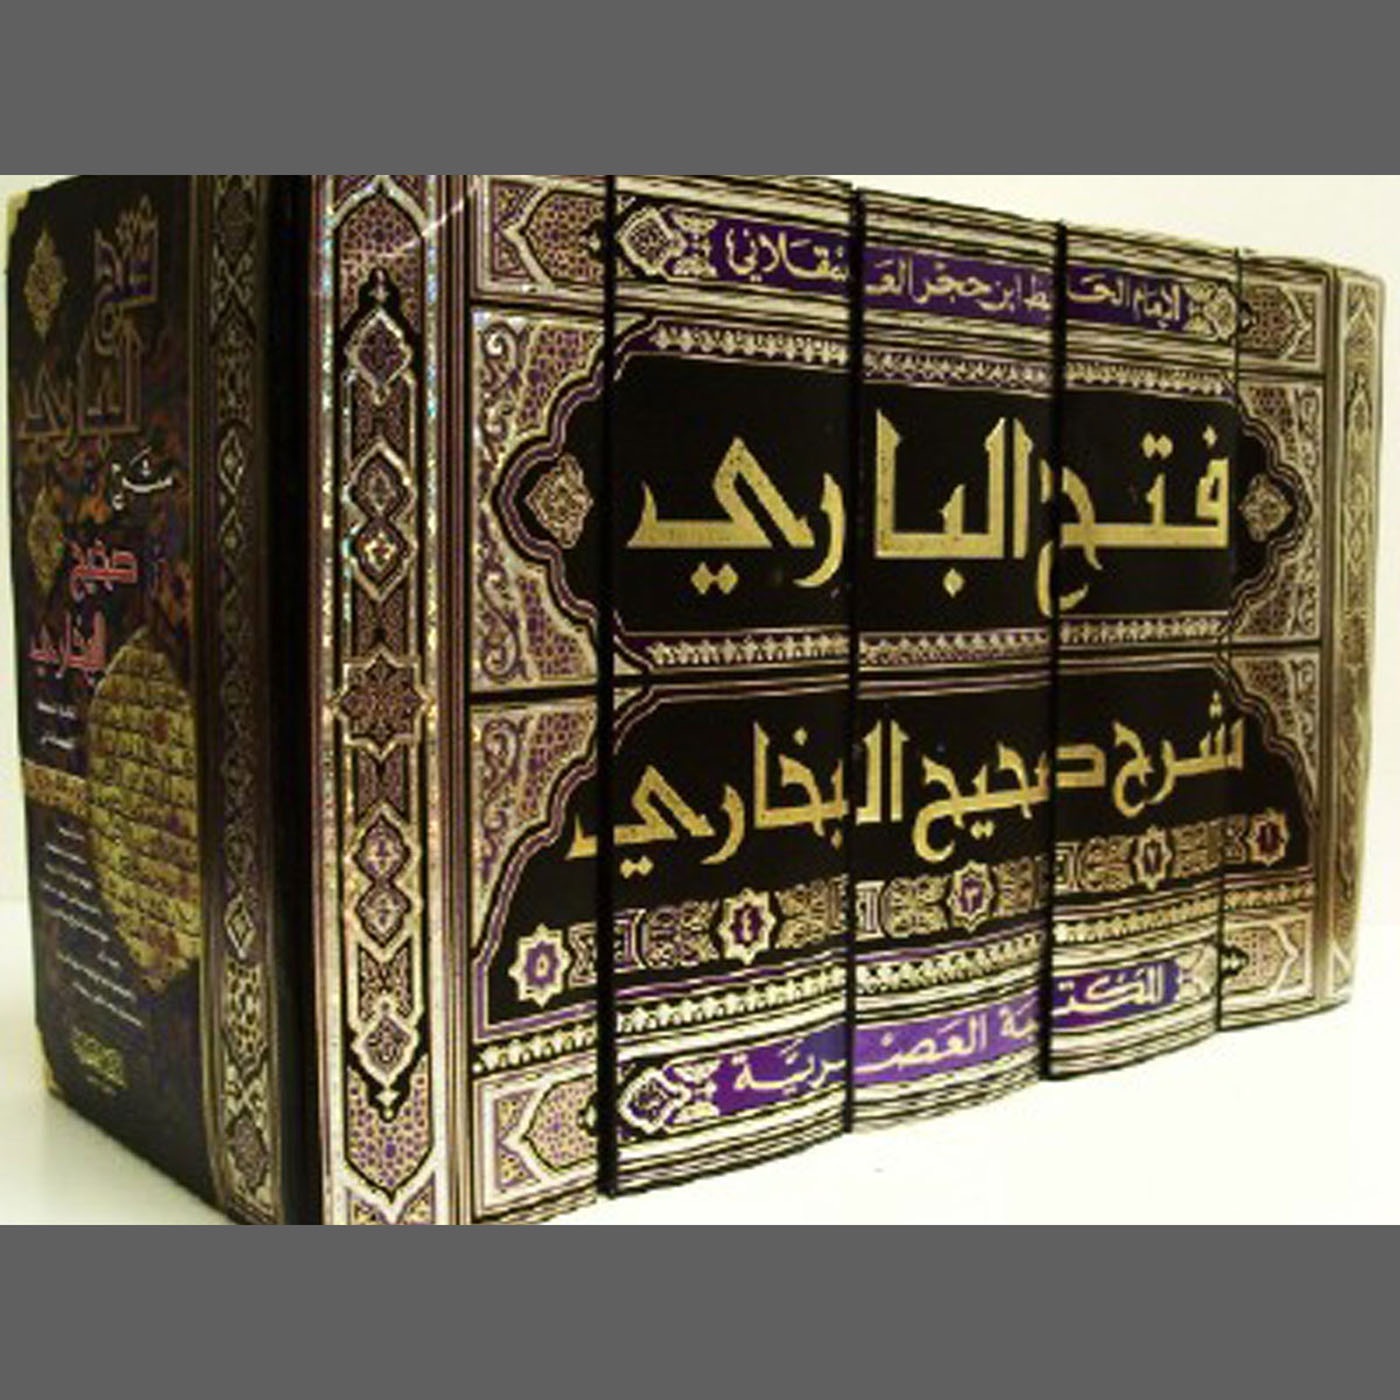 Аль бухари купить. Имам Аль Бухари хадисы. Сборник Сахих Аль Бухари. Бухари Сахих Аль-Бухари хадис.